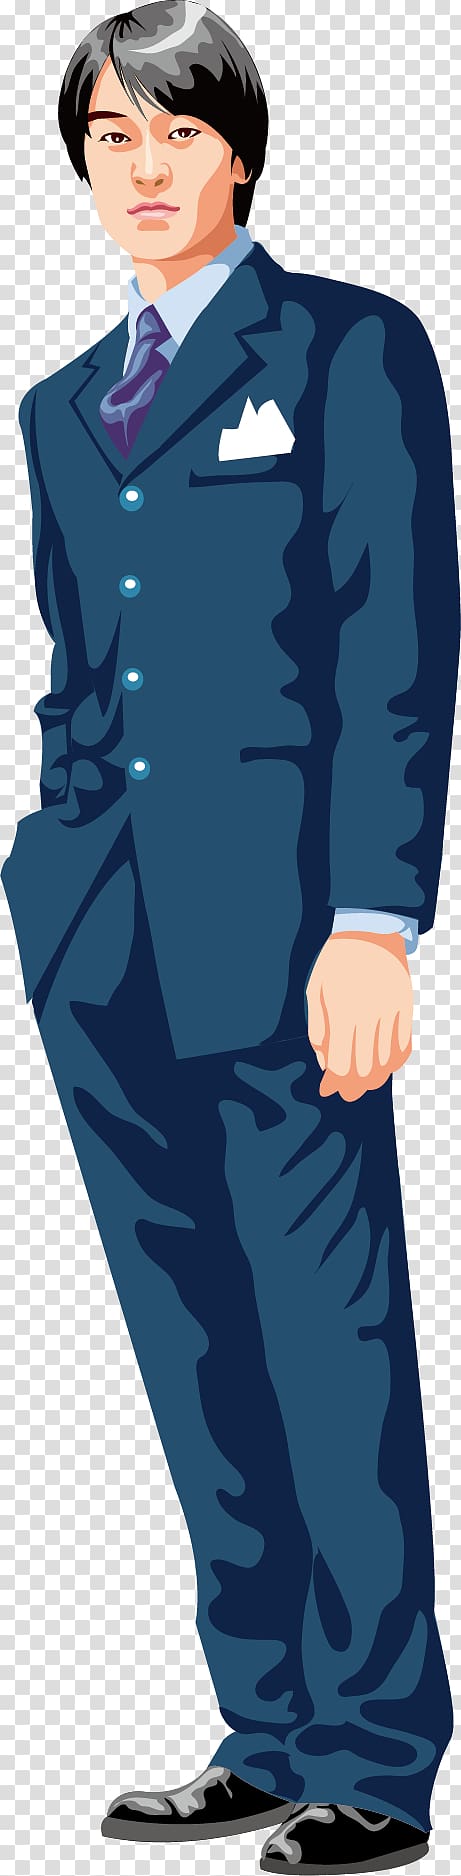 men's blue suit, Suit Cartoon Man, Suit man transparent background PNG clipart